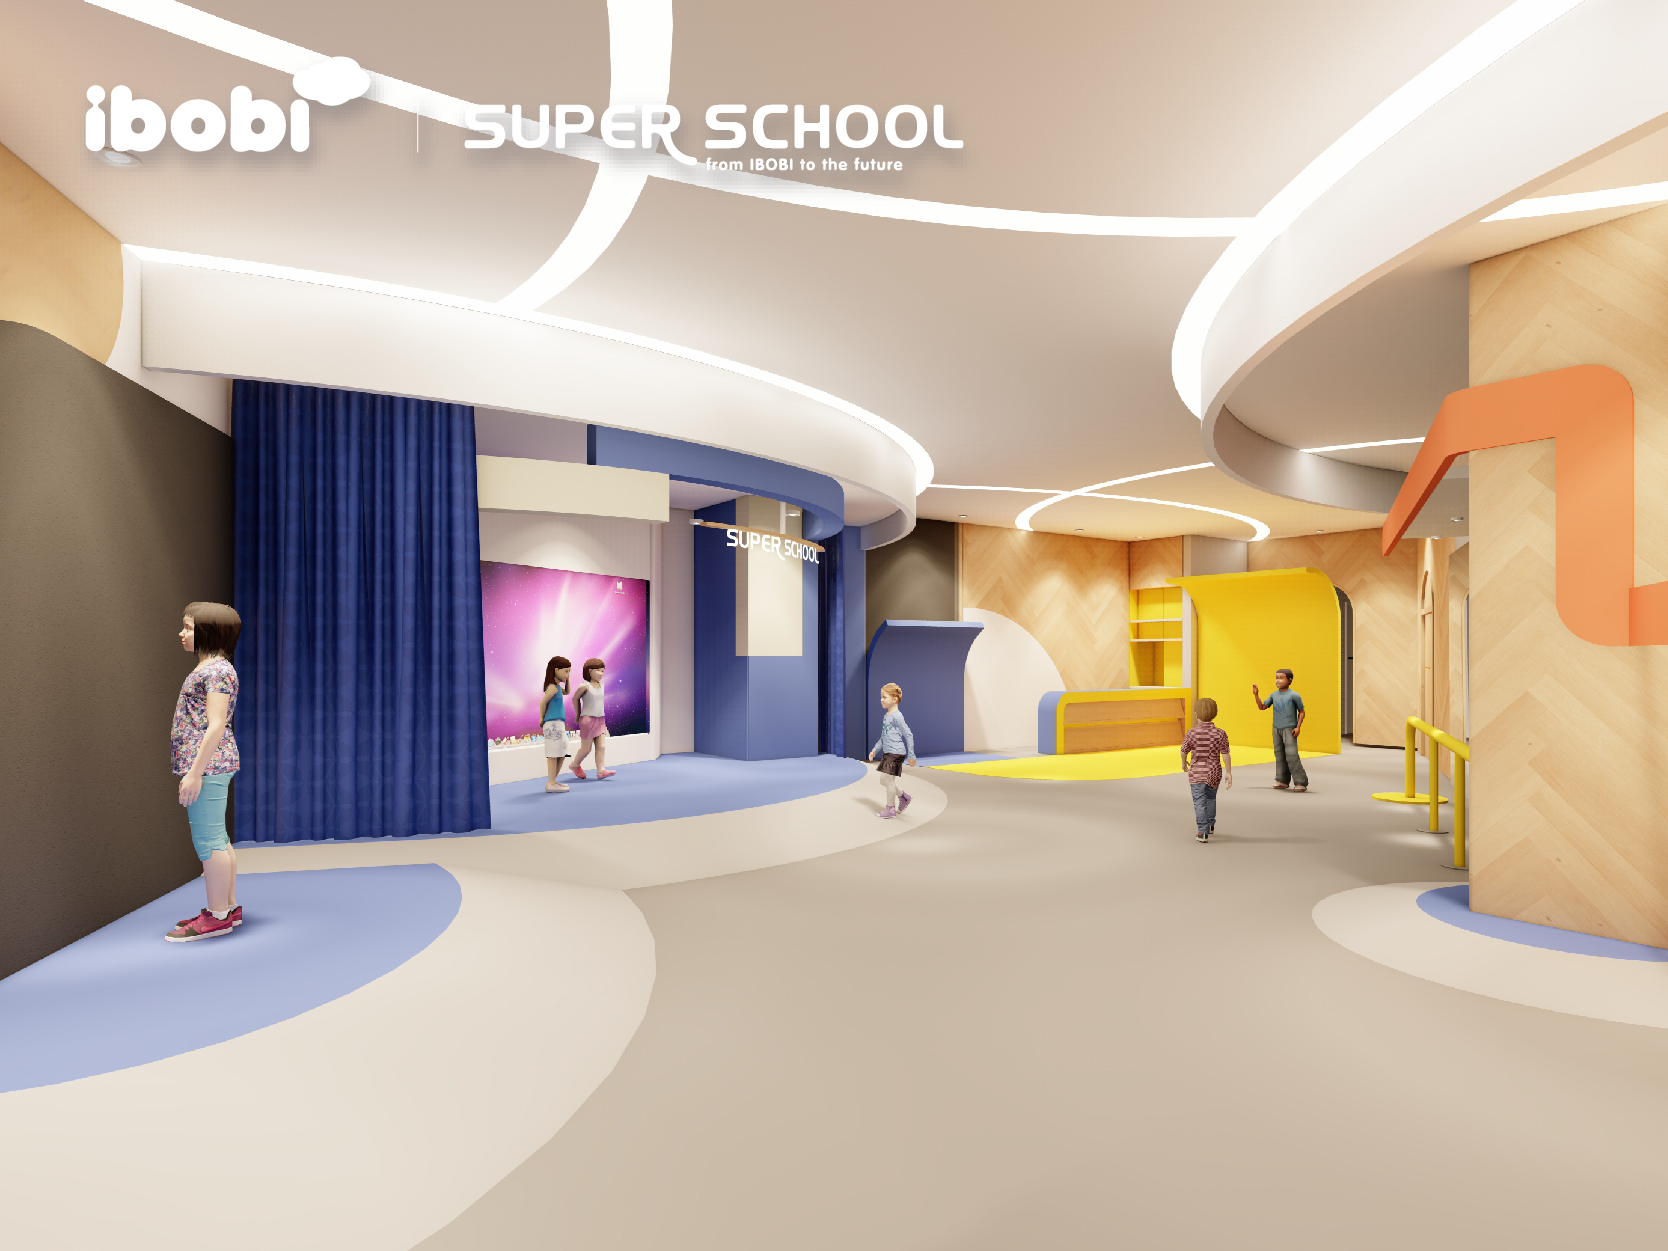 2021年12月25日IBOBI SUPER SCHOOL校园开放日免费预约